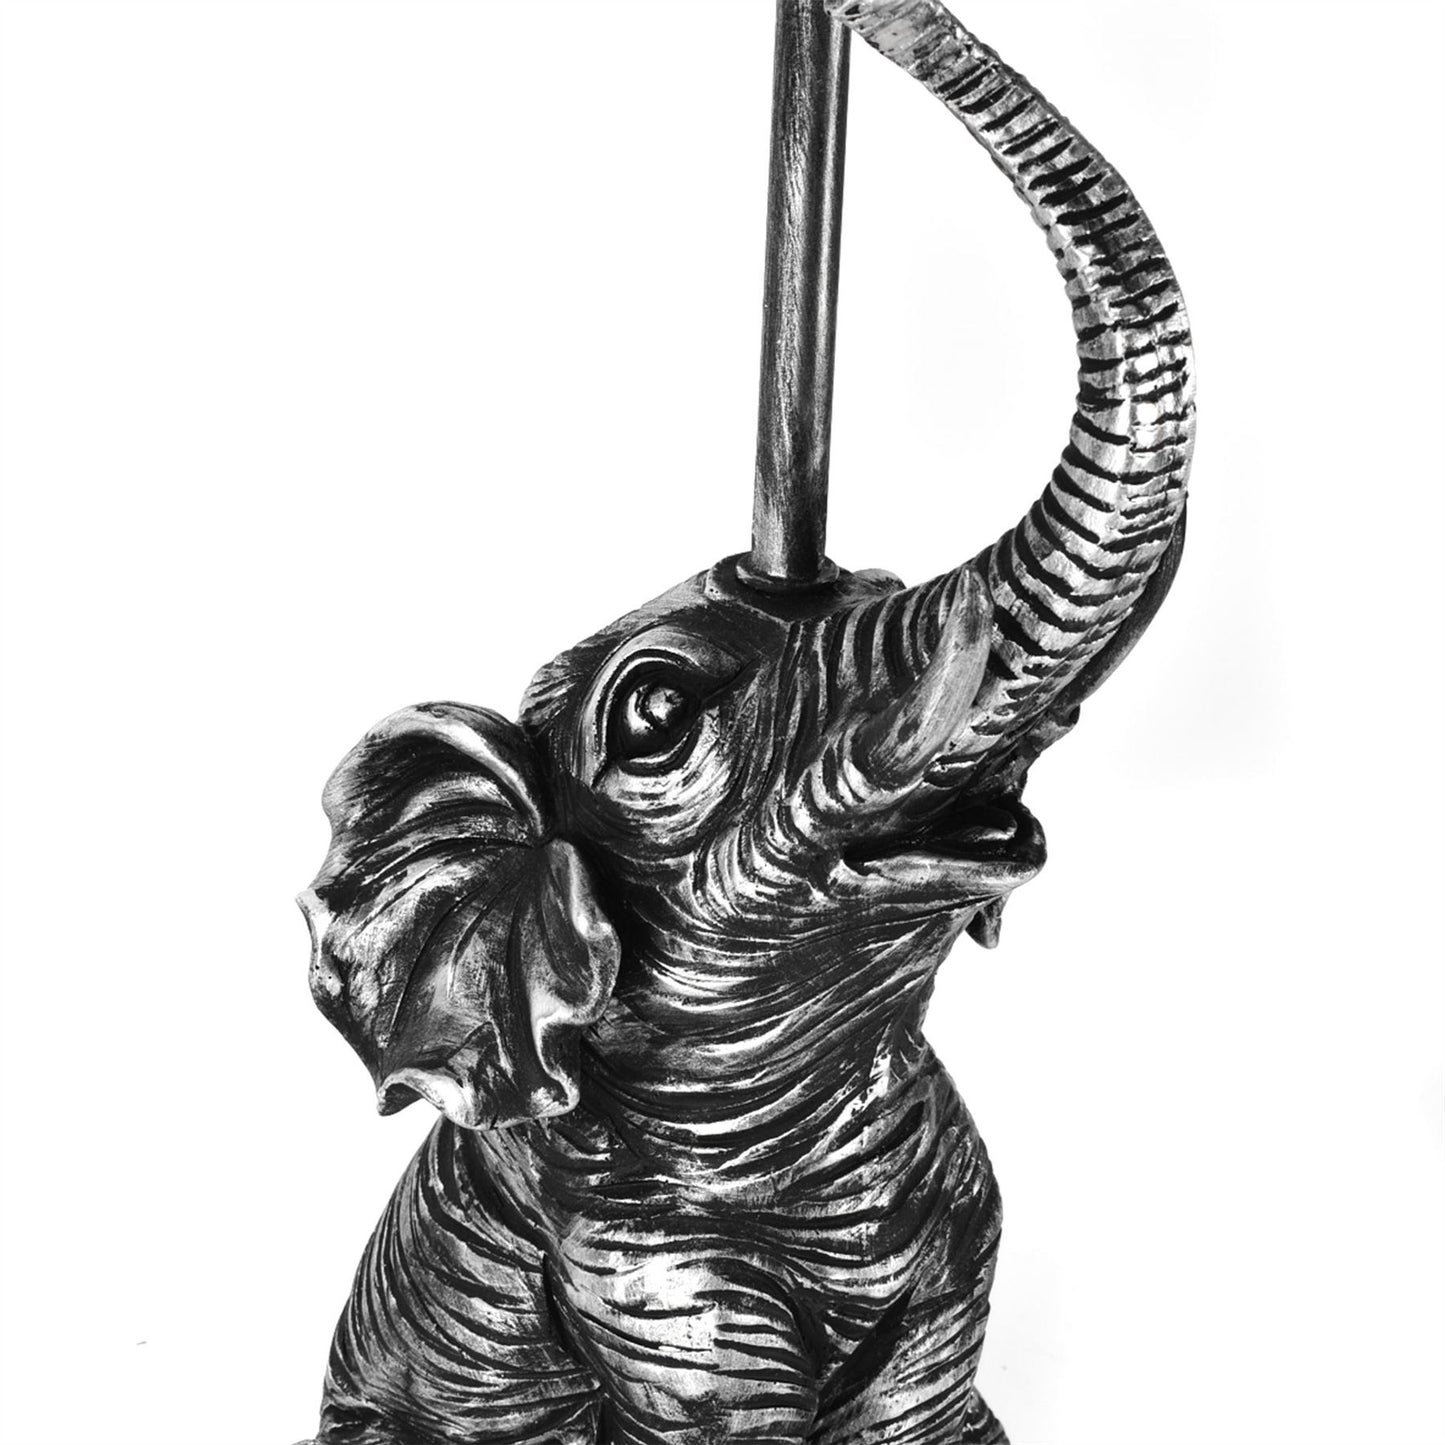 Hestia Elephant Table Lamp 46cm